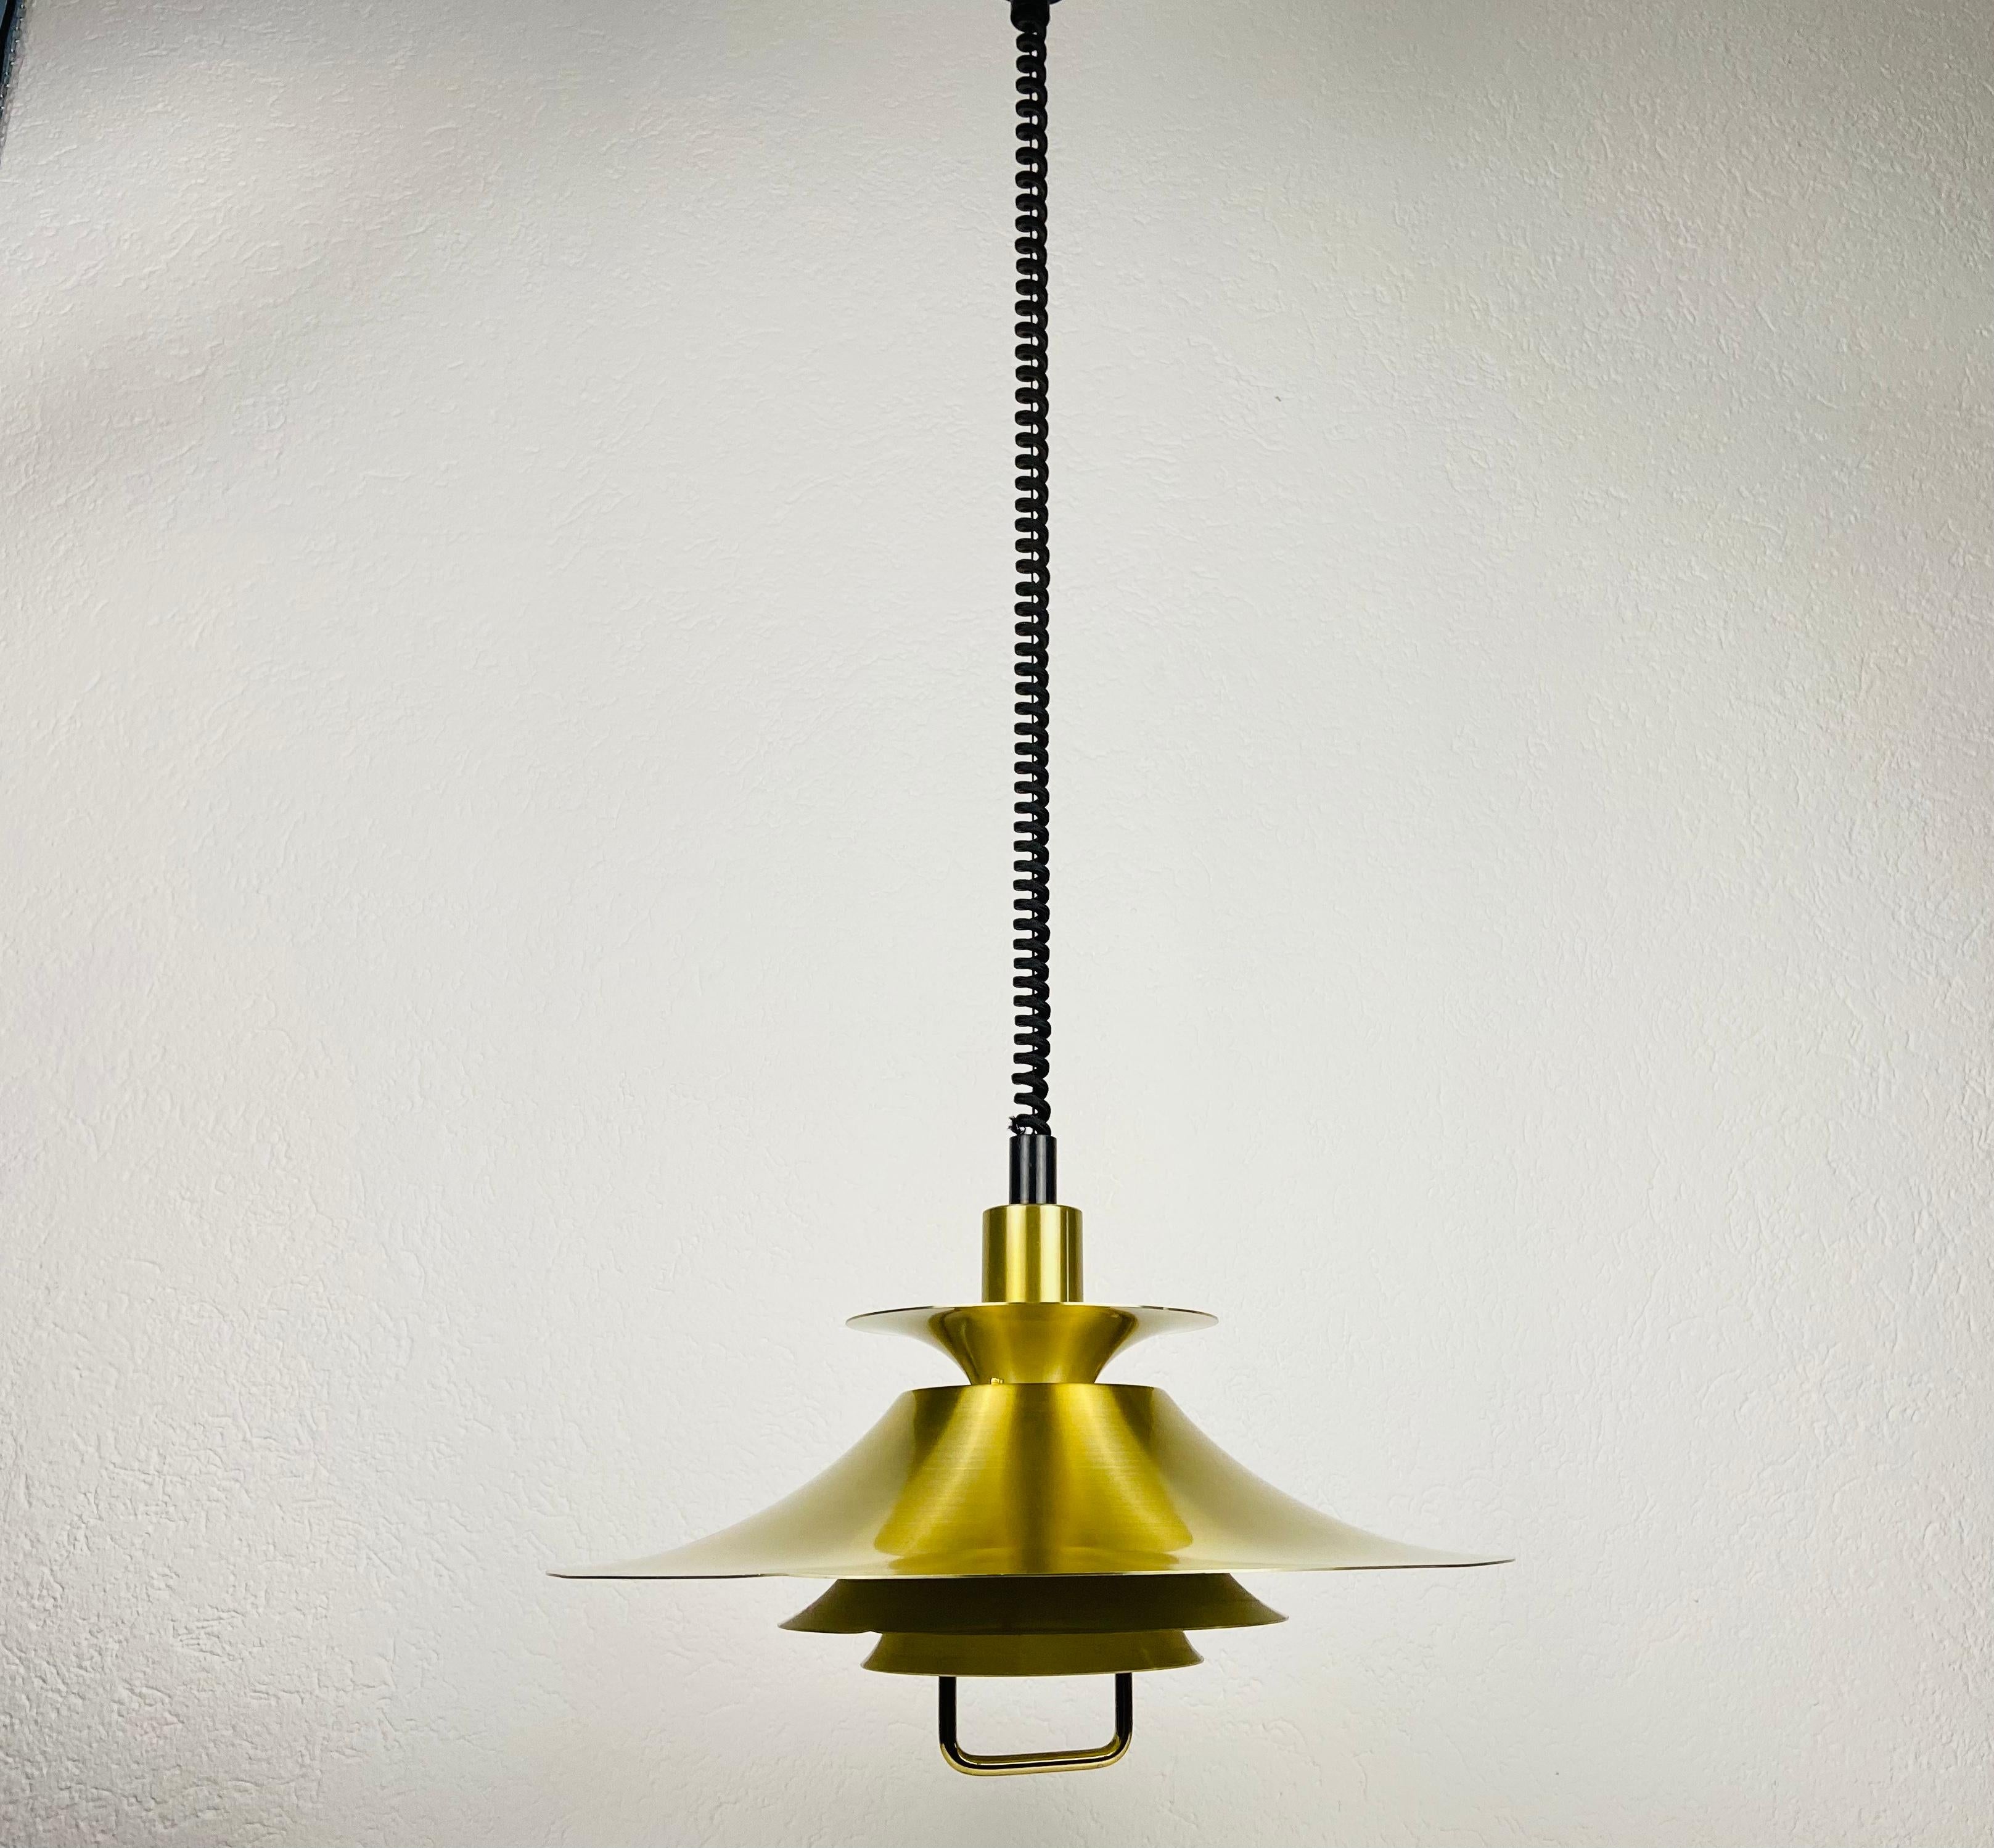 Lampe pendante danoise en laiton et métal fabriquée en Allemagne dans les années 1960. Le luminaire donne une très belle lumière. Il est fabriqué en aluminium et en laiton de faible épaisseur.

Mesures :
Hauteur 73-135 cm
Diamètre 48 cm

Le